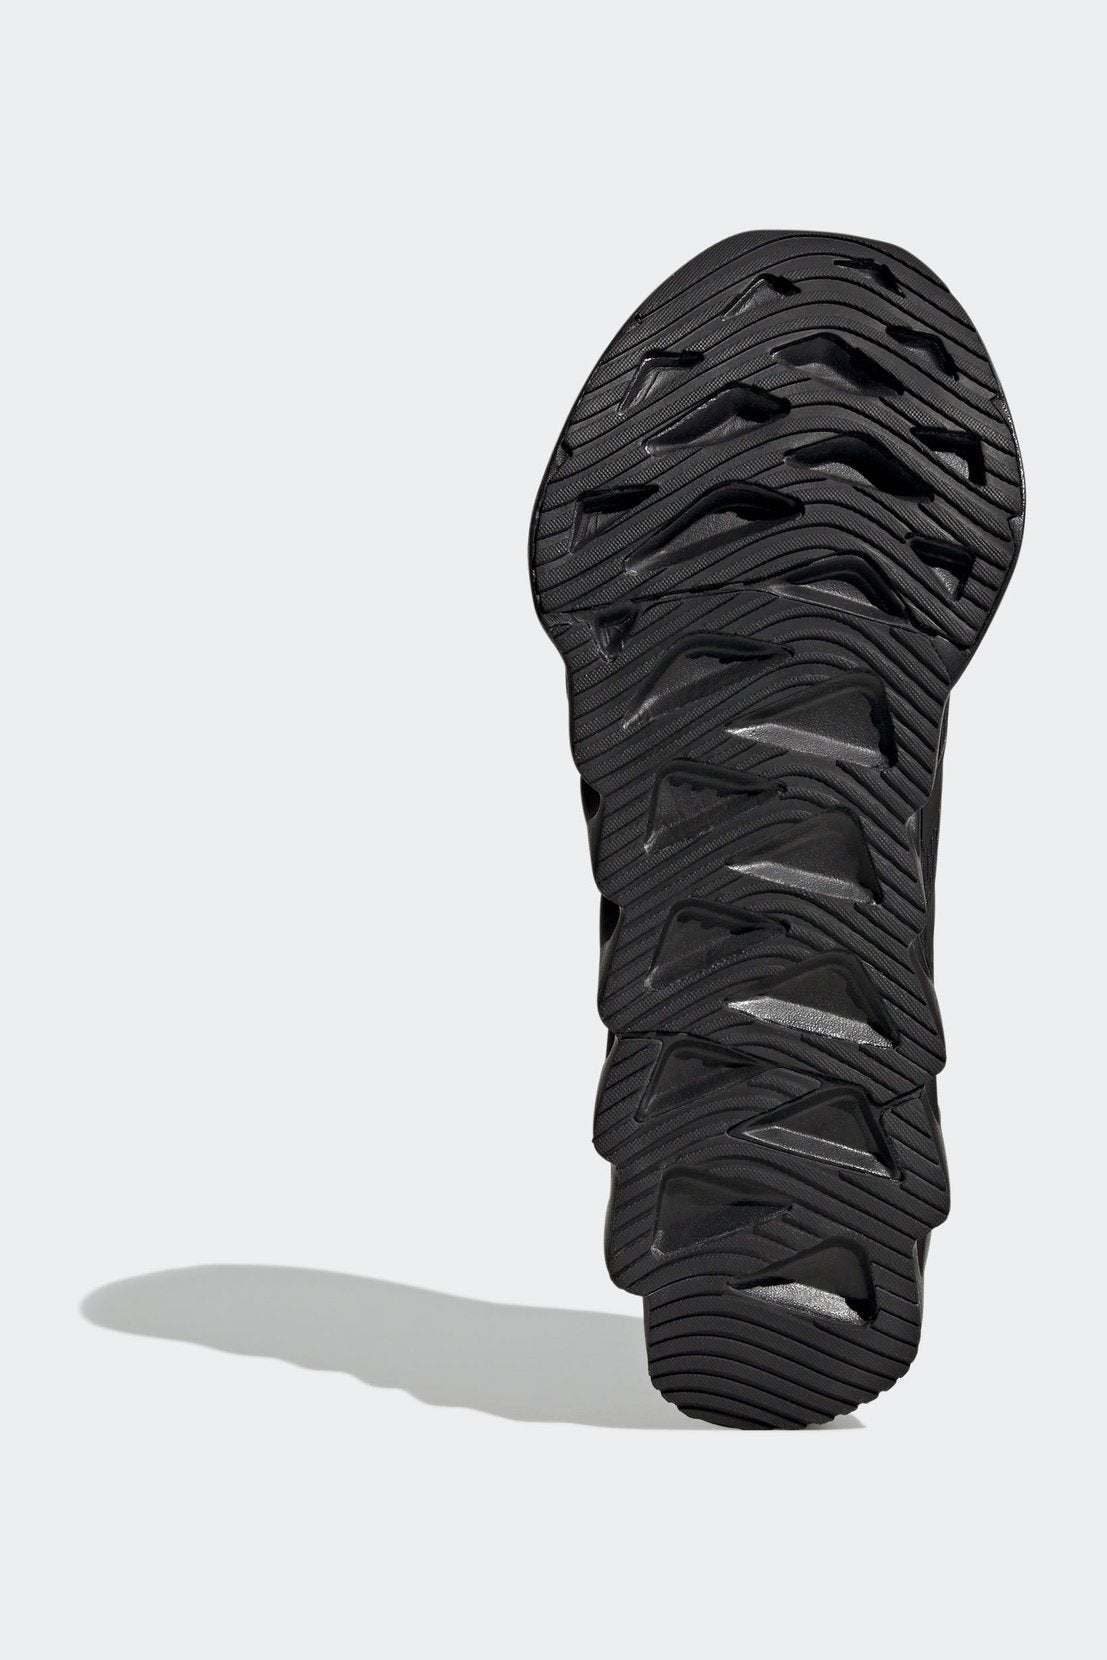 נעלי ספורט לגברים SWITCH RUN בצבע שחור